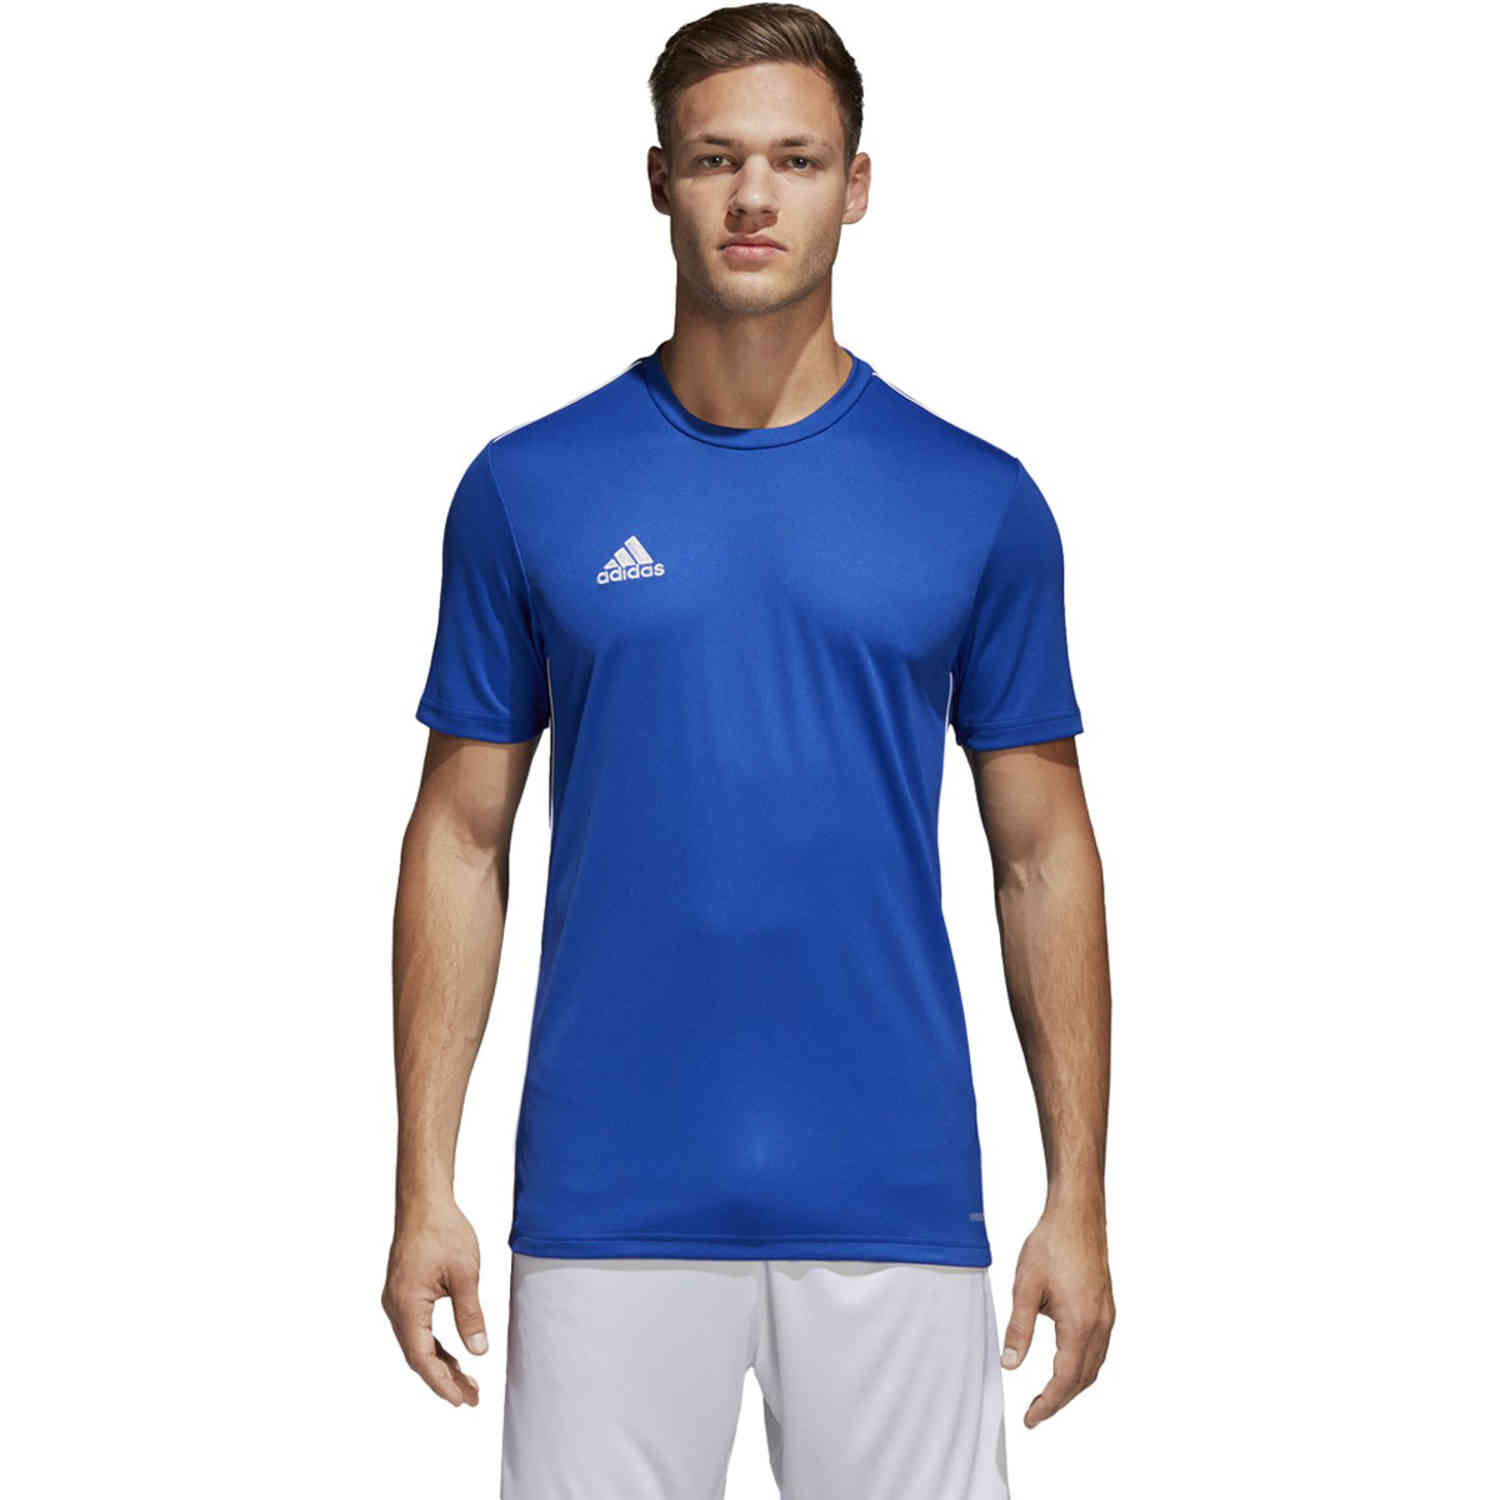 adidas Core 18 Training Jersey - Bold Blue/White - SoccerPro